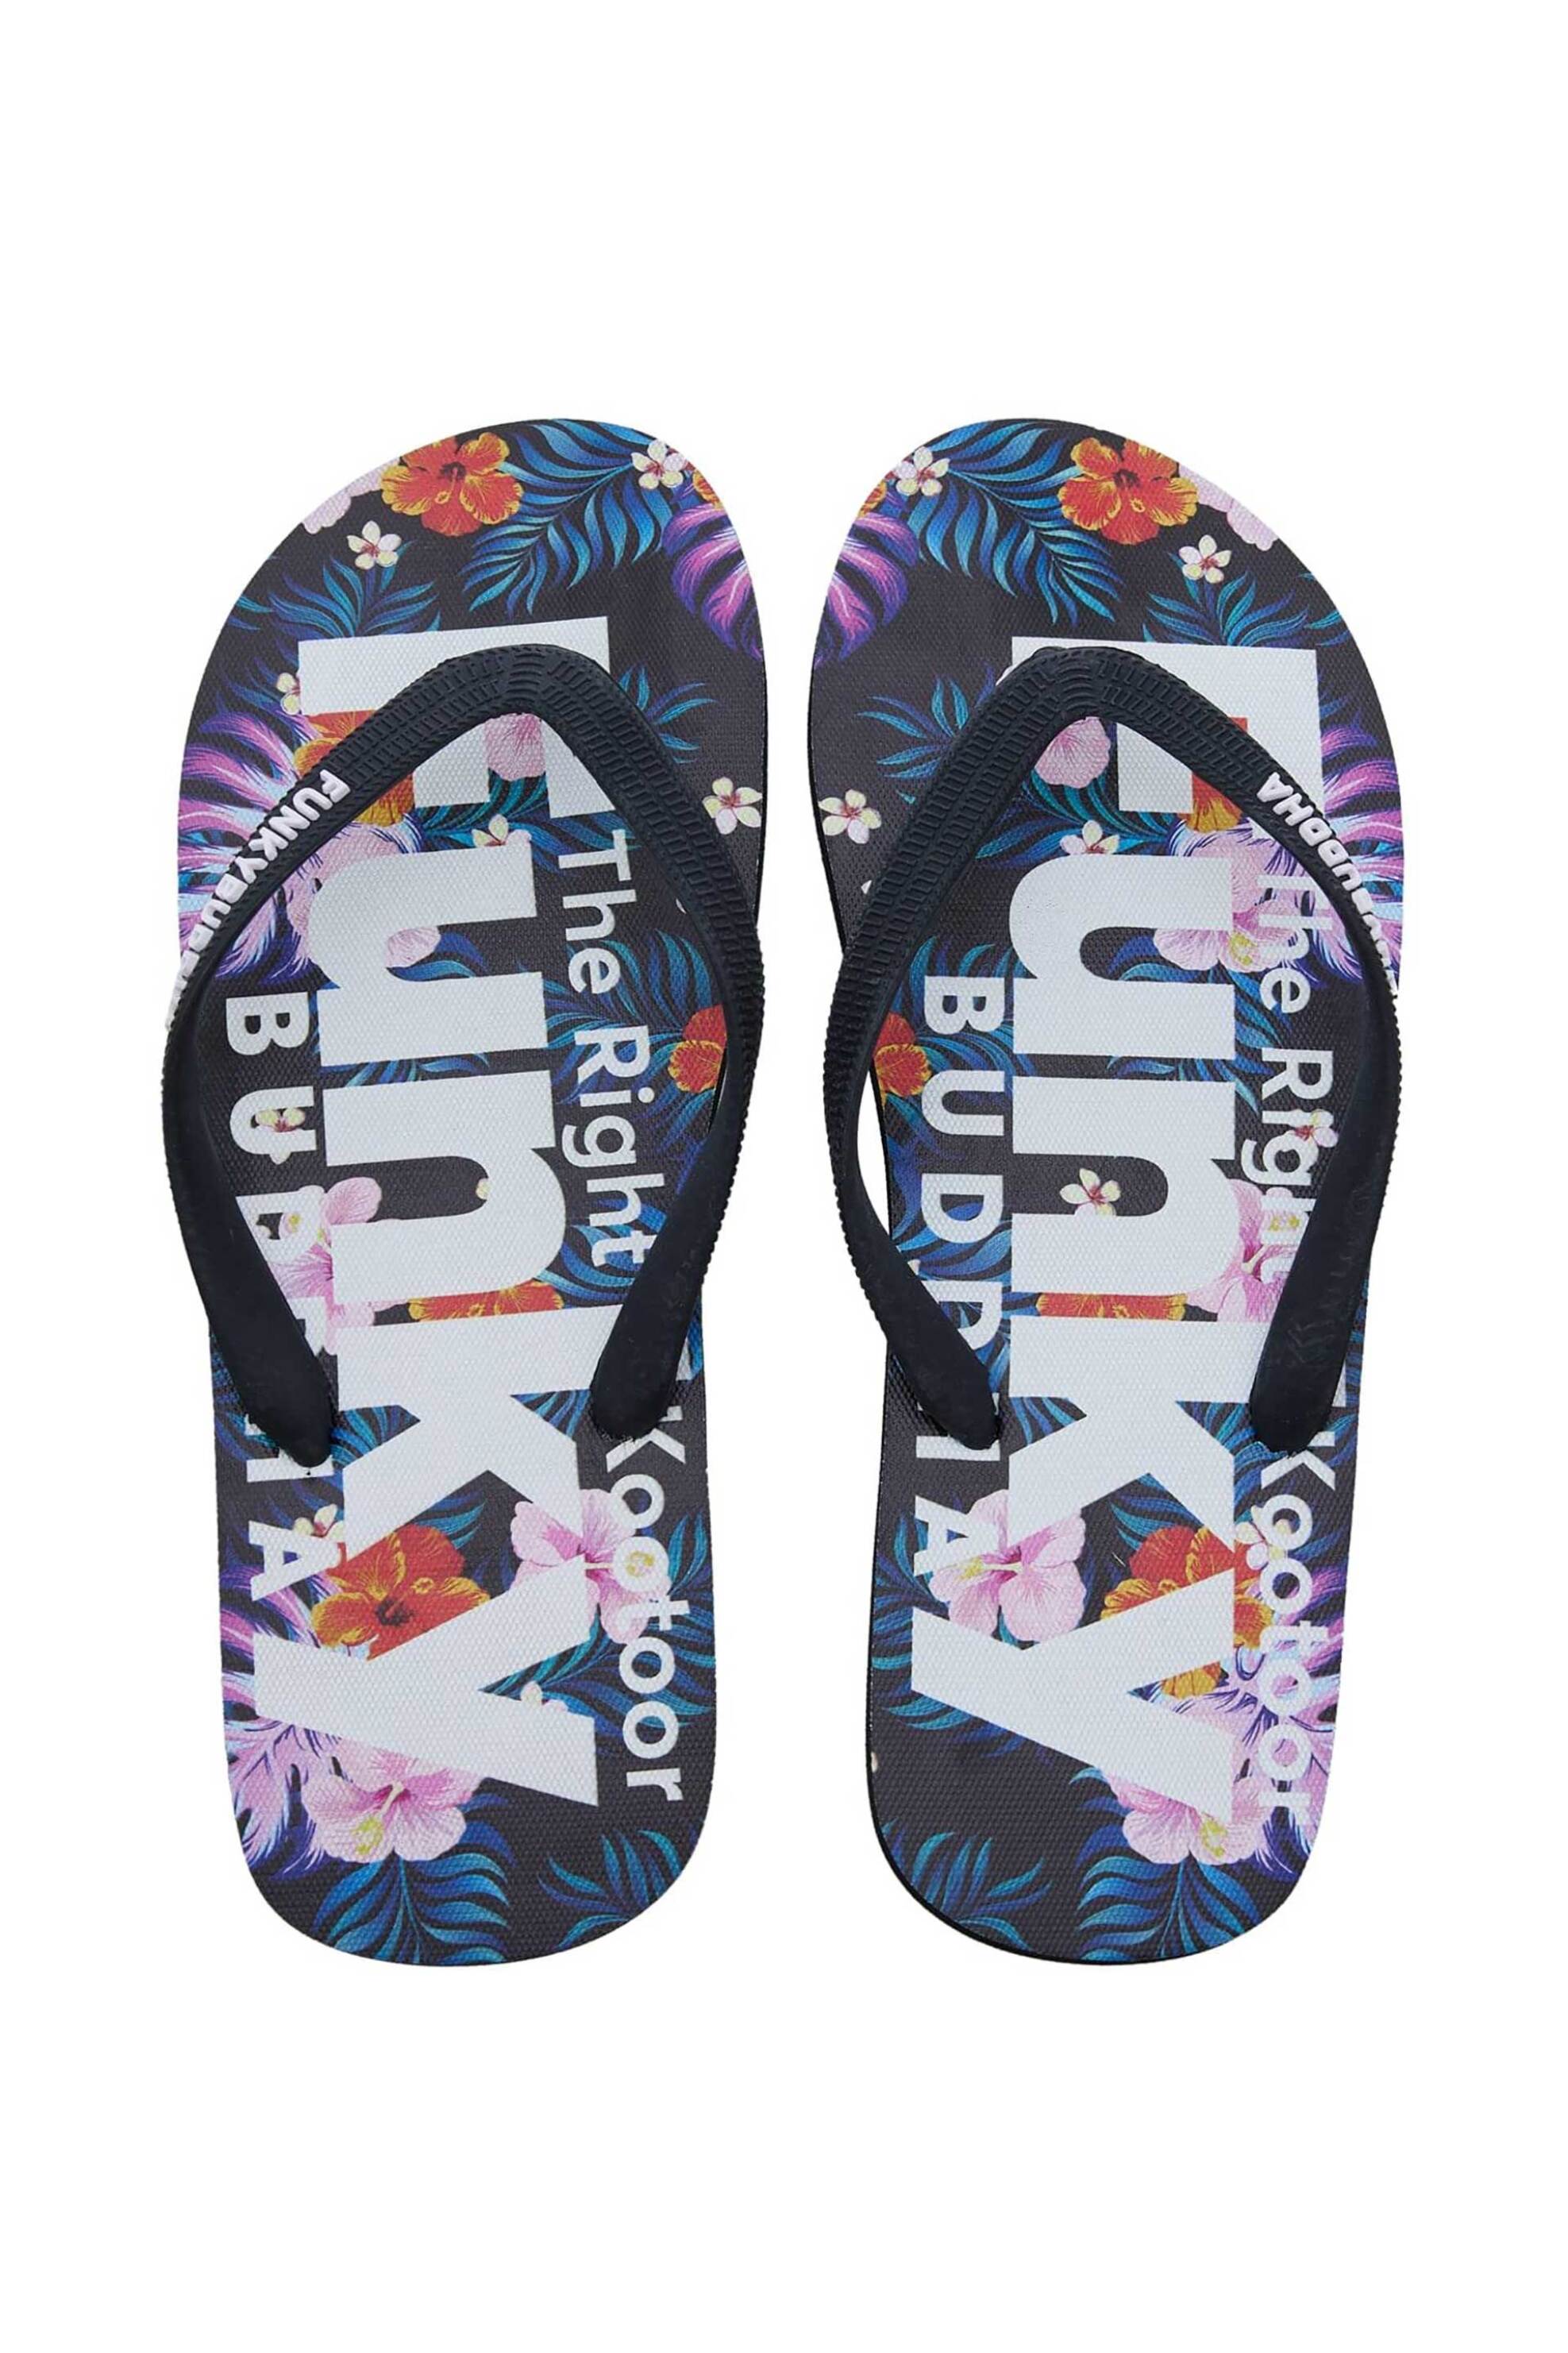 Ανδρική Μόδα > Ανδρικά Παπούτσια > Ανδρικές Παντόφλες & Σαγιονάρες Funky Buddha ανδρικές σαγιονάρες με floral και logo print στον πάτο - FBM007-003-08 Μαύρο